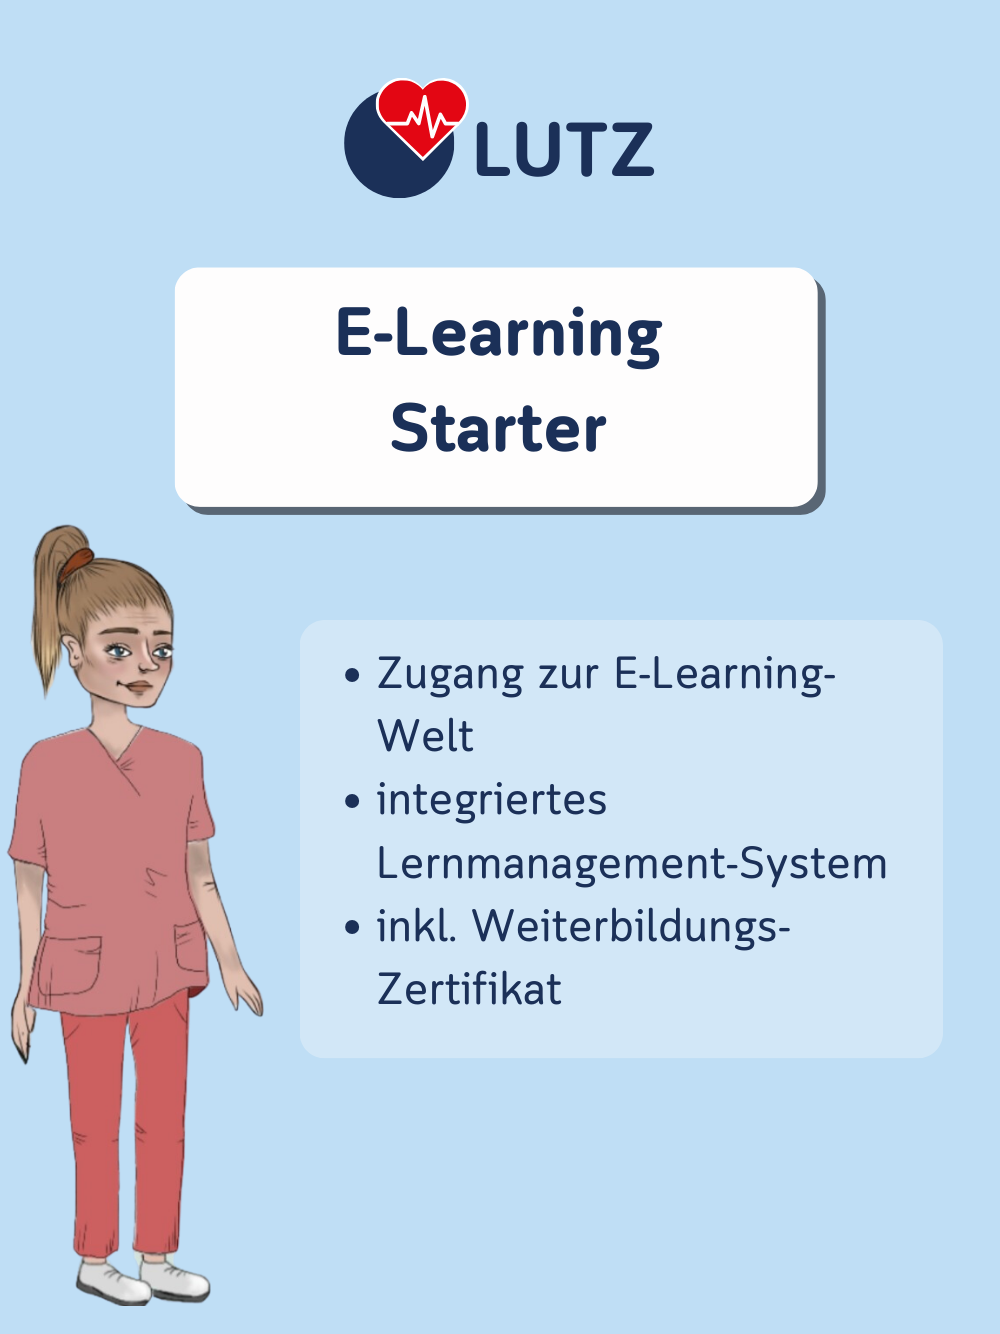 LUTZ - E-Learning Starter